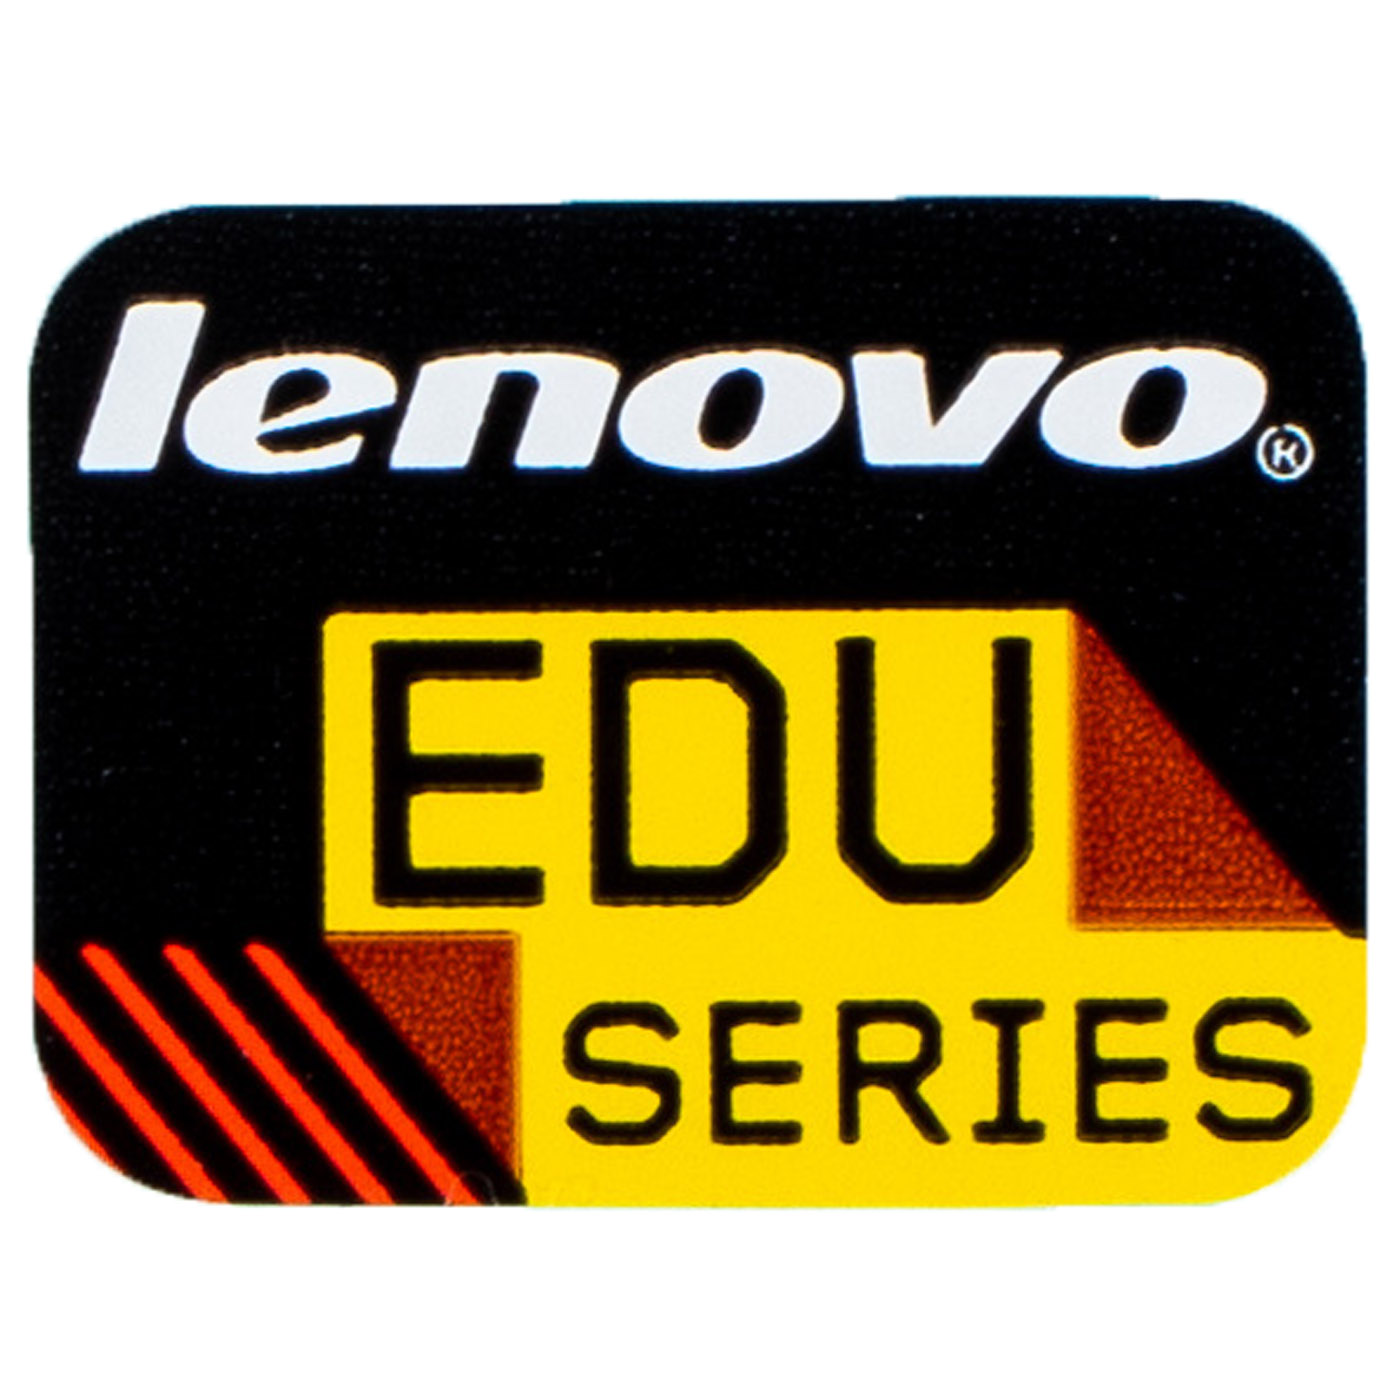 Naklejka Lenovo EDU Series 14 x 11 mm